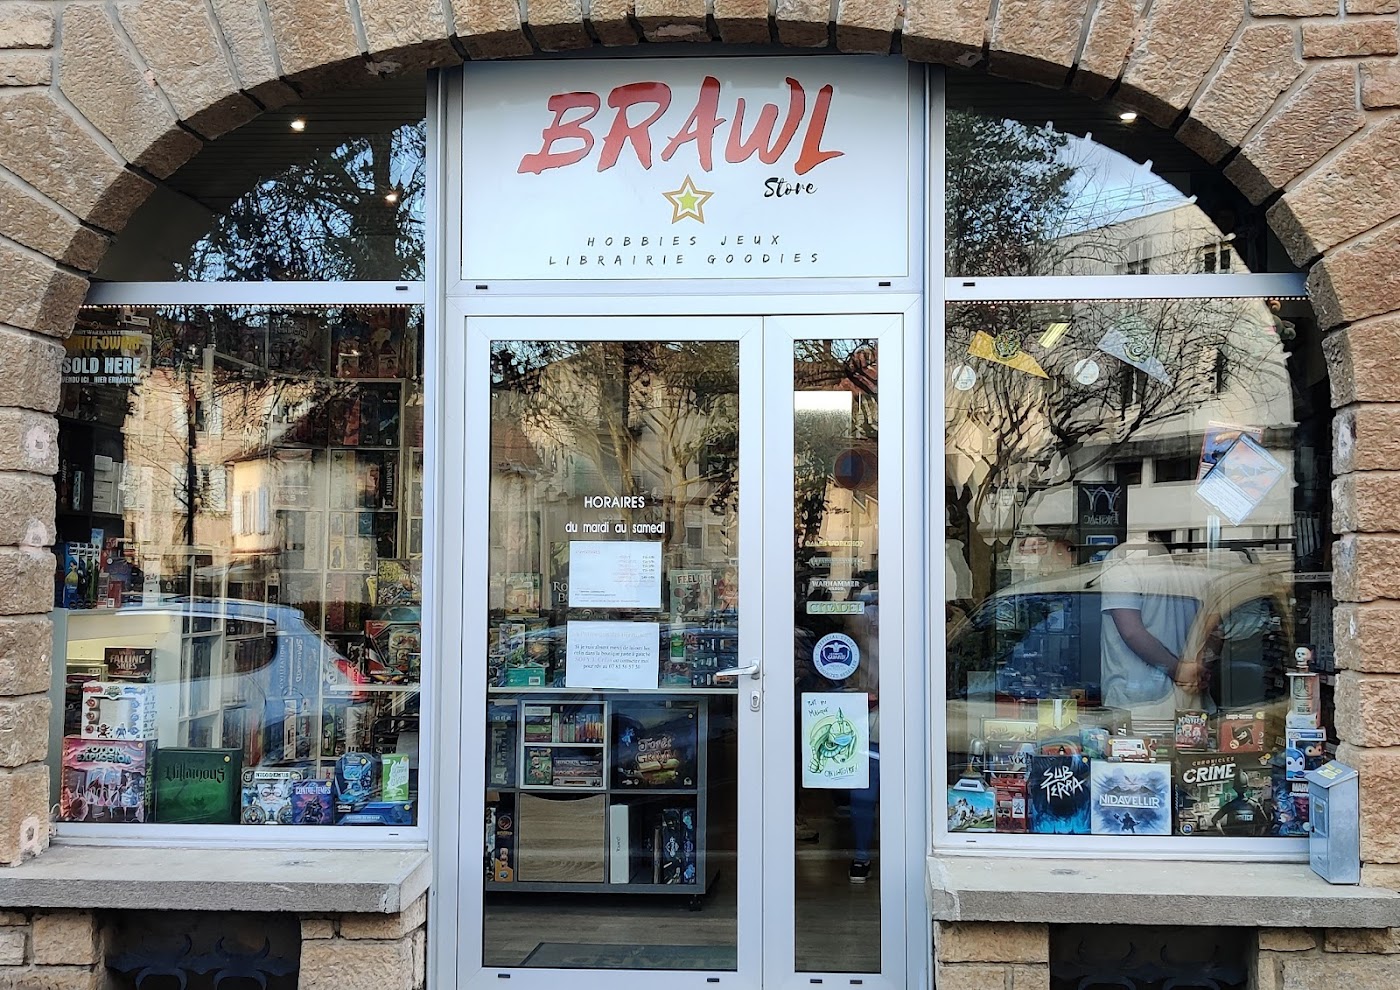 BRAWL Store